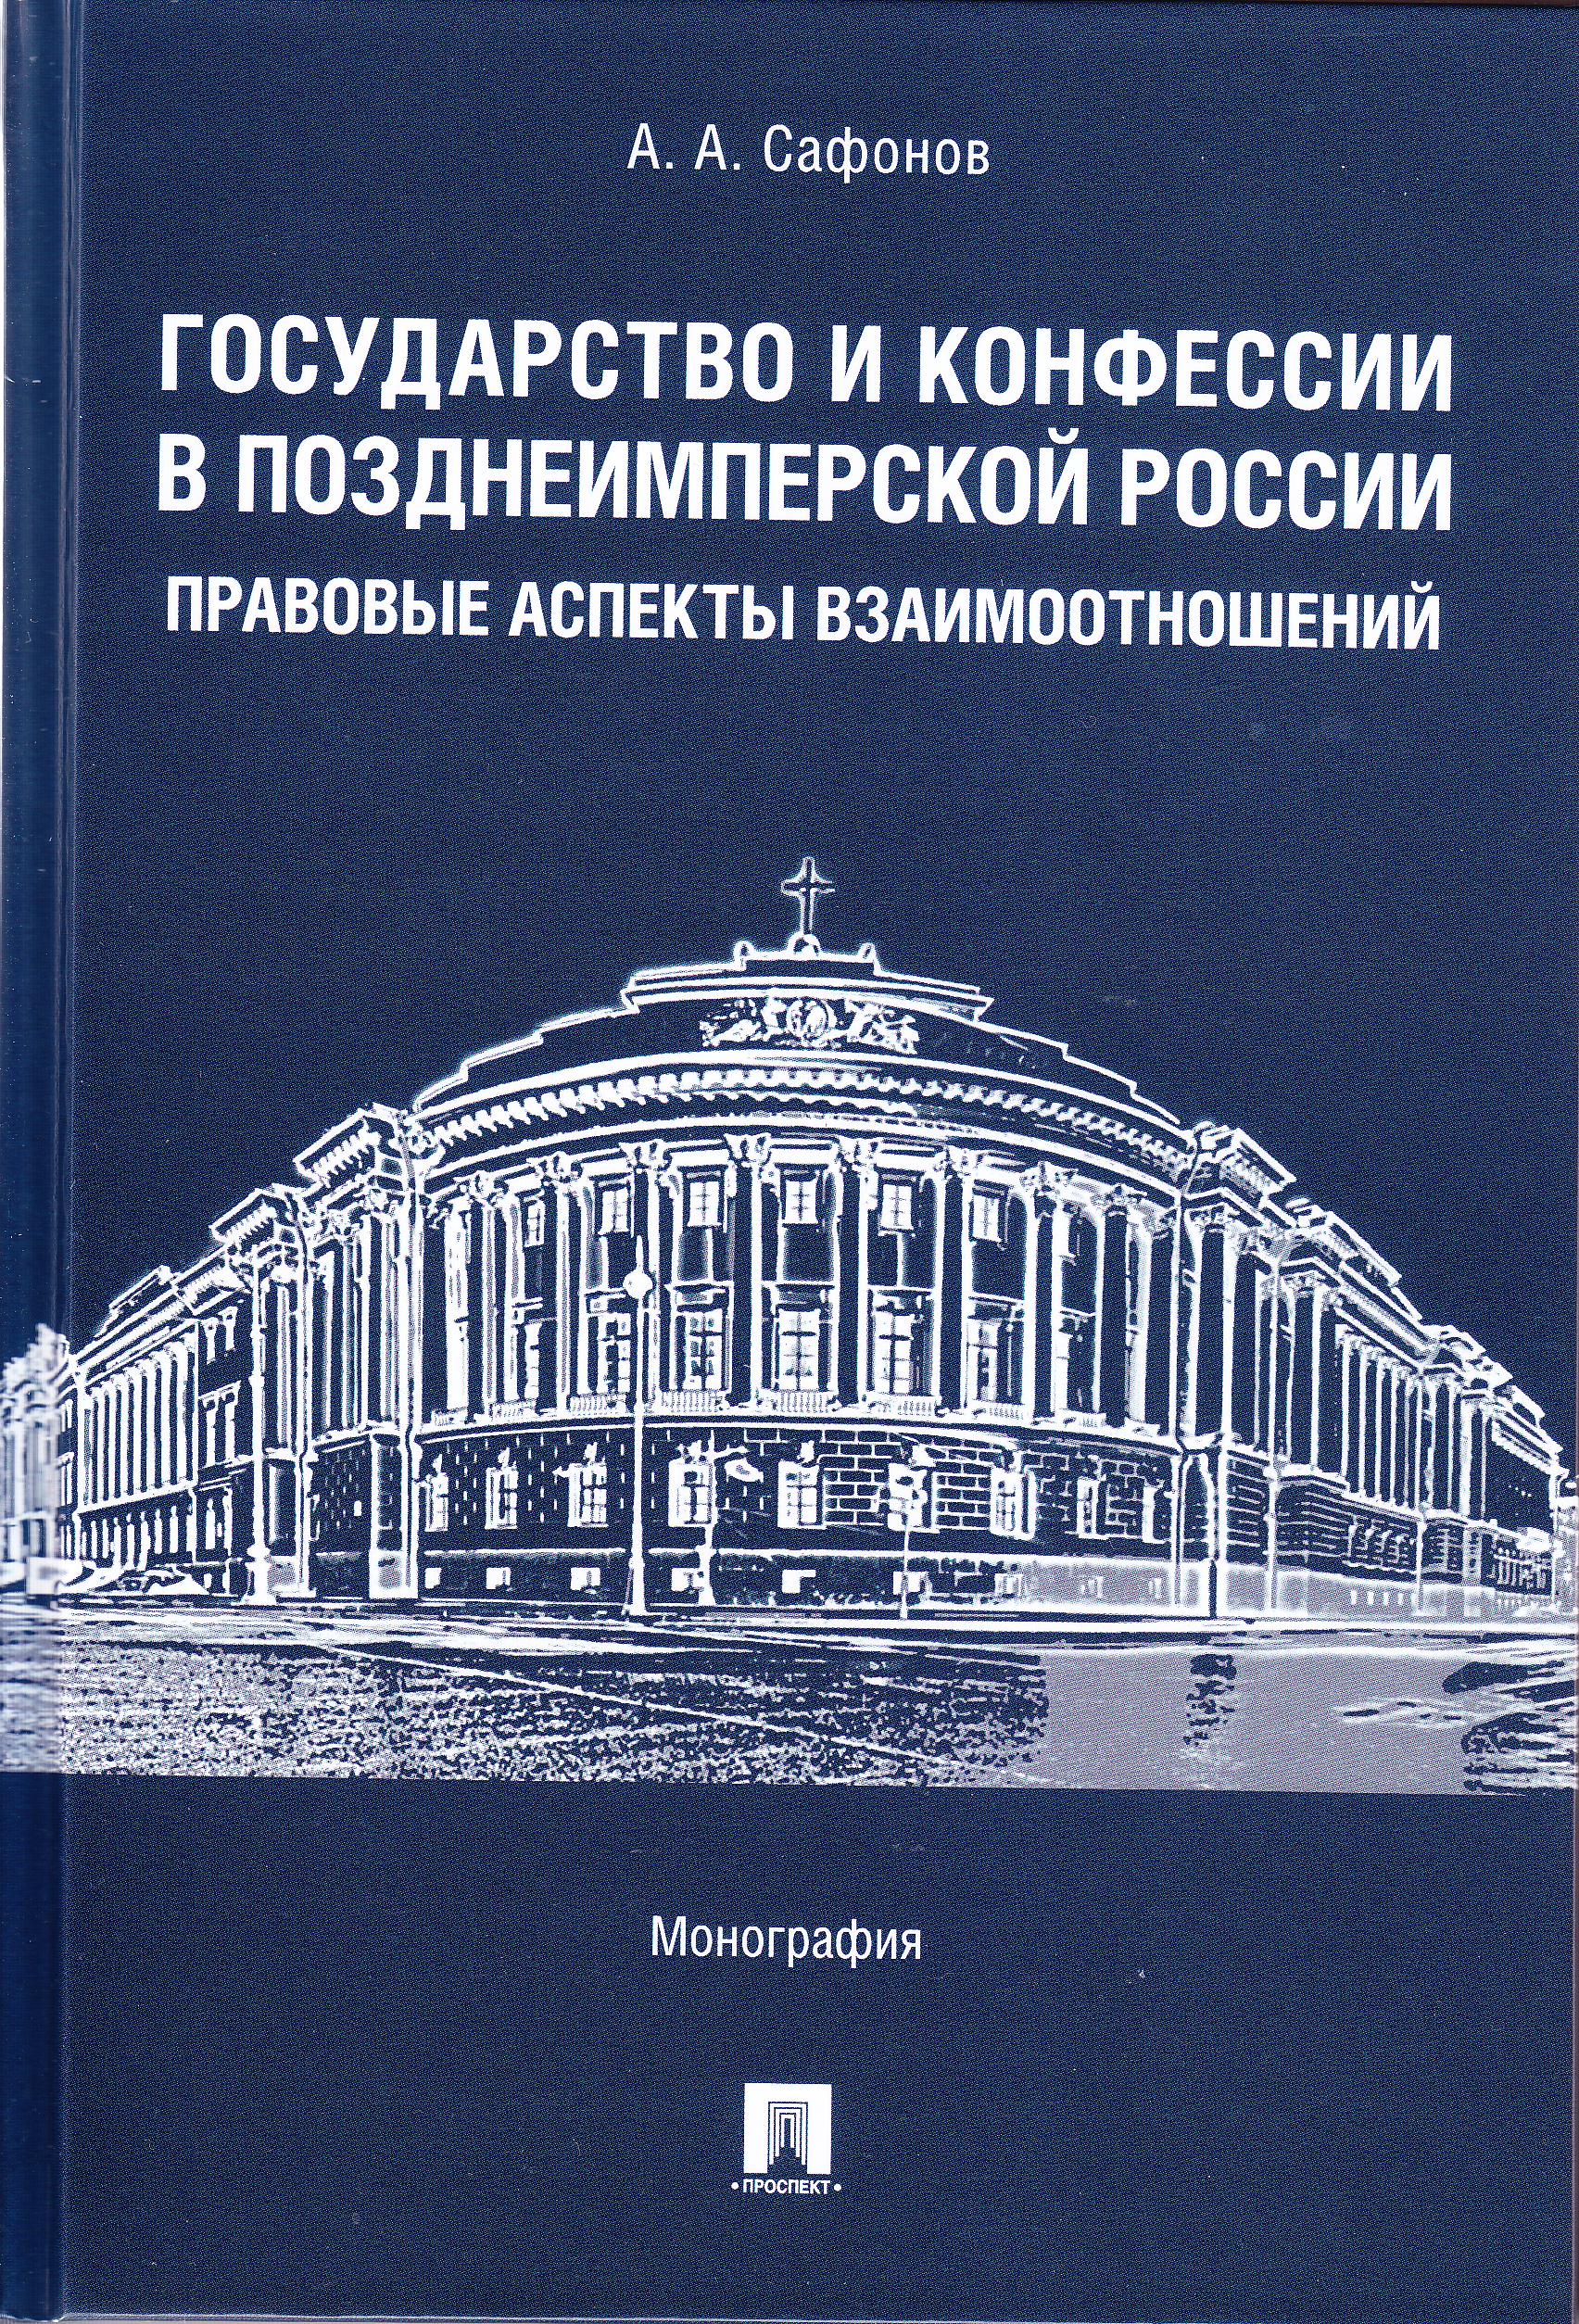 Государство и конфессии в позднеимперской России: правовые аспекты взаимоотношений